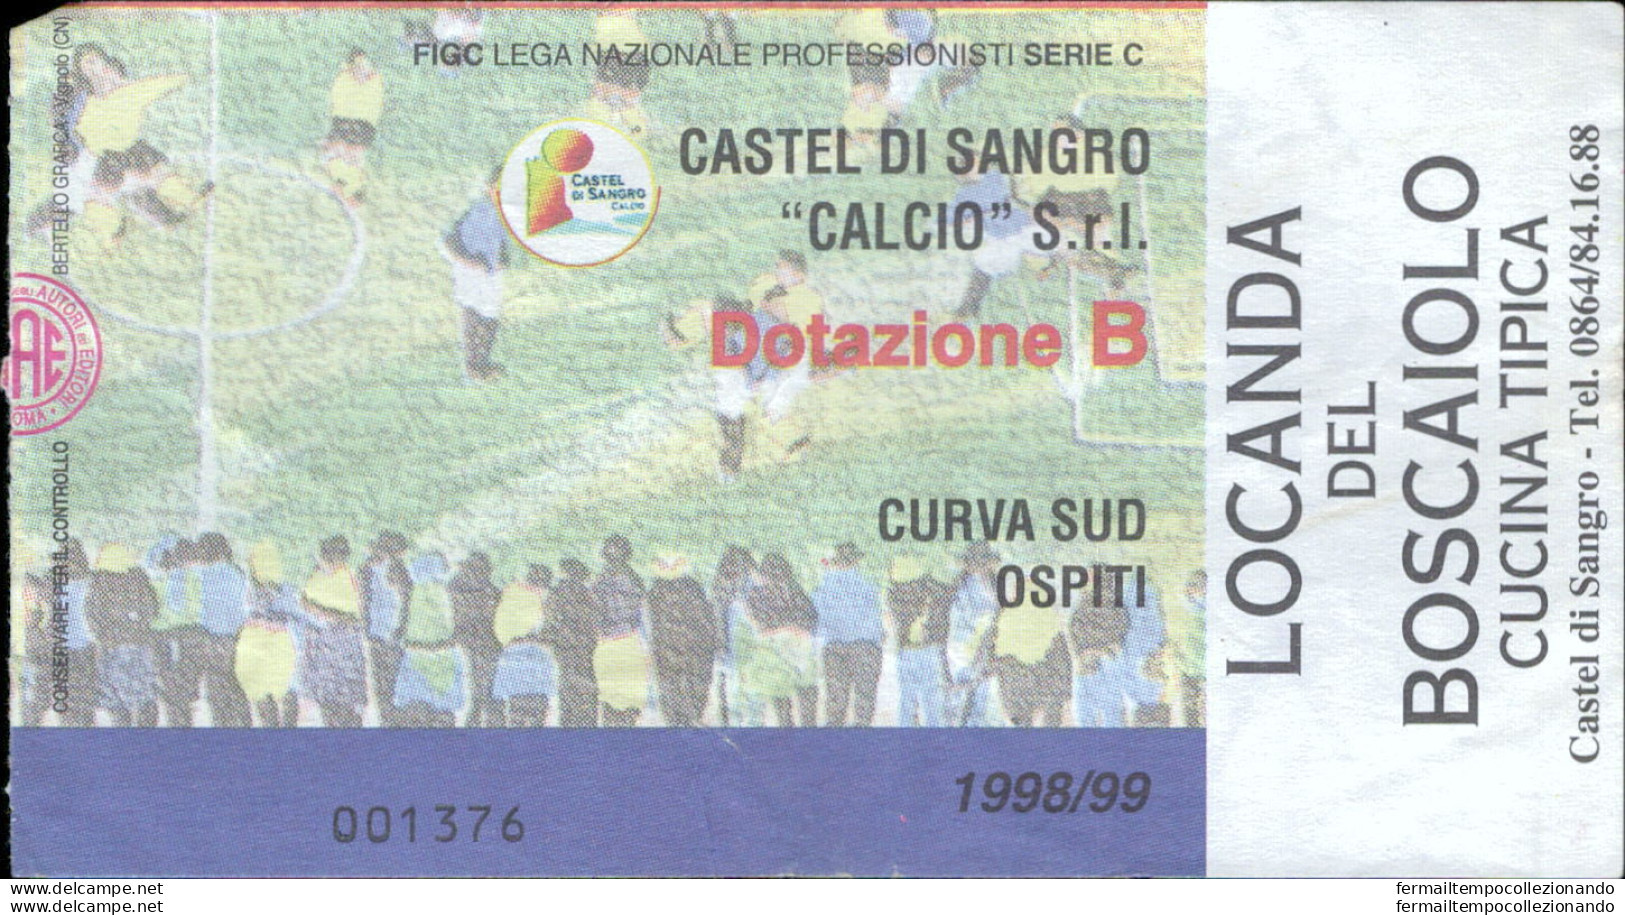 Bl27 Biglietto Calcio Ticket Castel Di Sangro Curva Sud Ospiti - Biglietti D'ingresso